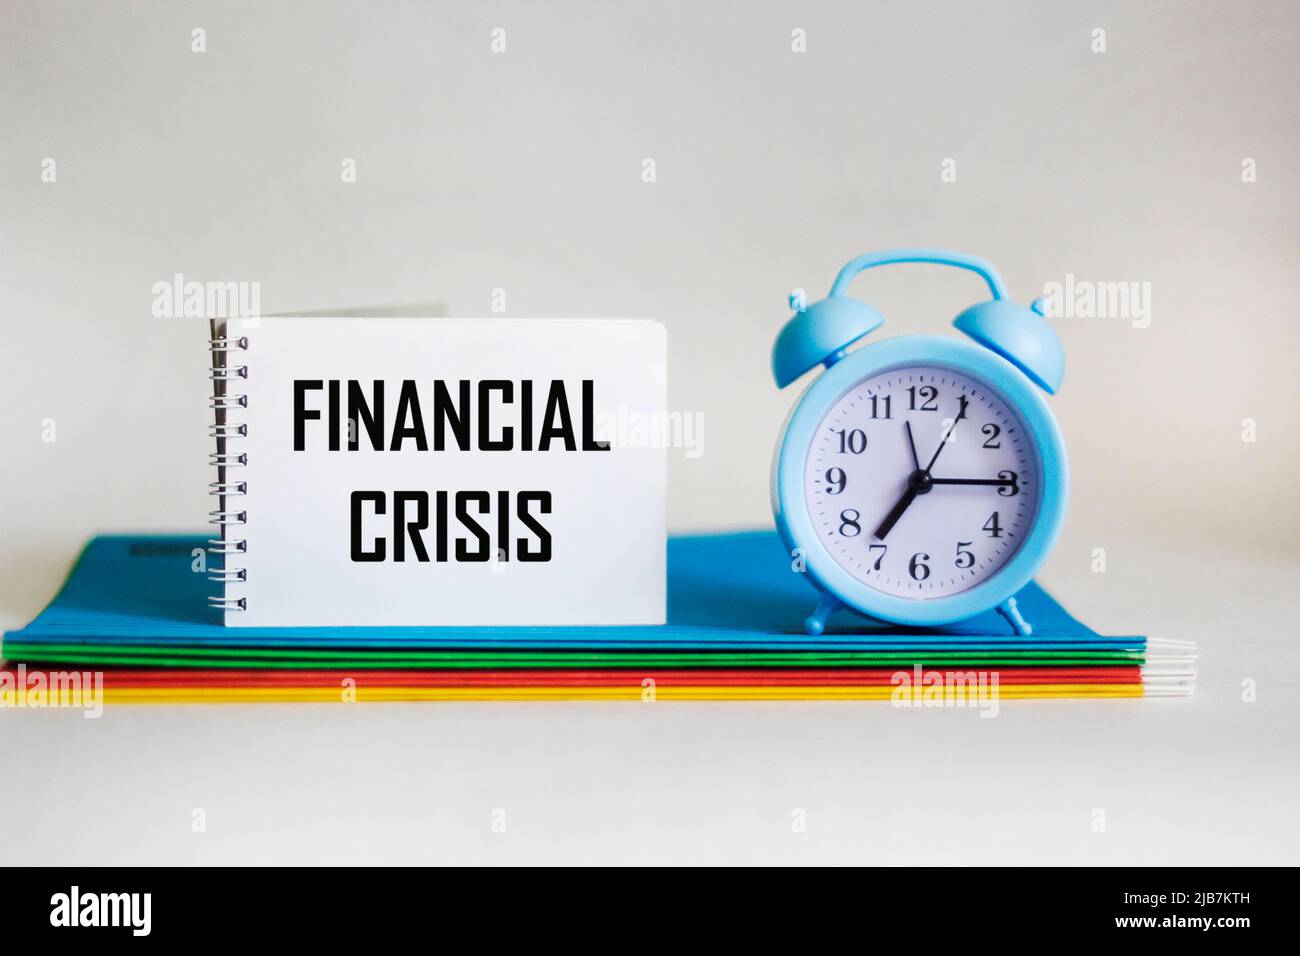 Das Wort Finanzkrise steht auf einem Notizblock, der auf mehrfarbigen Mappen und neben einer Uhr auf weißem Hintergrund liegt. Stockfoto